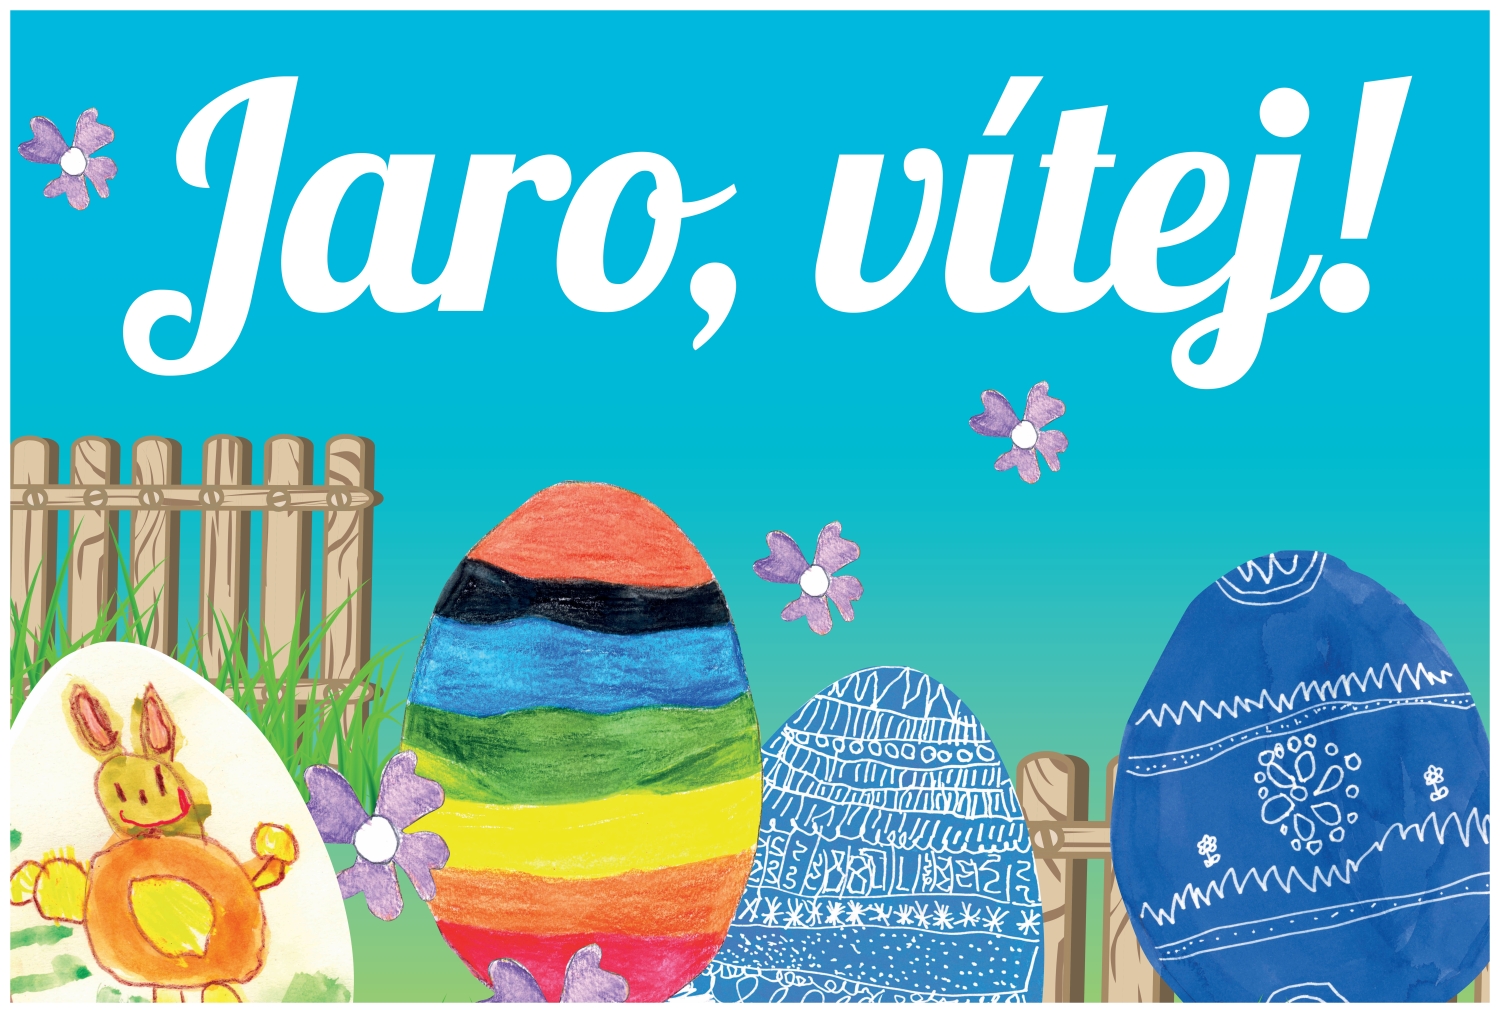 Děti přivítají jaro obrázky, ty nejhezčí ozdobí slovanské billboardy